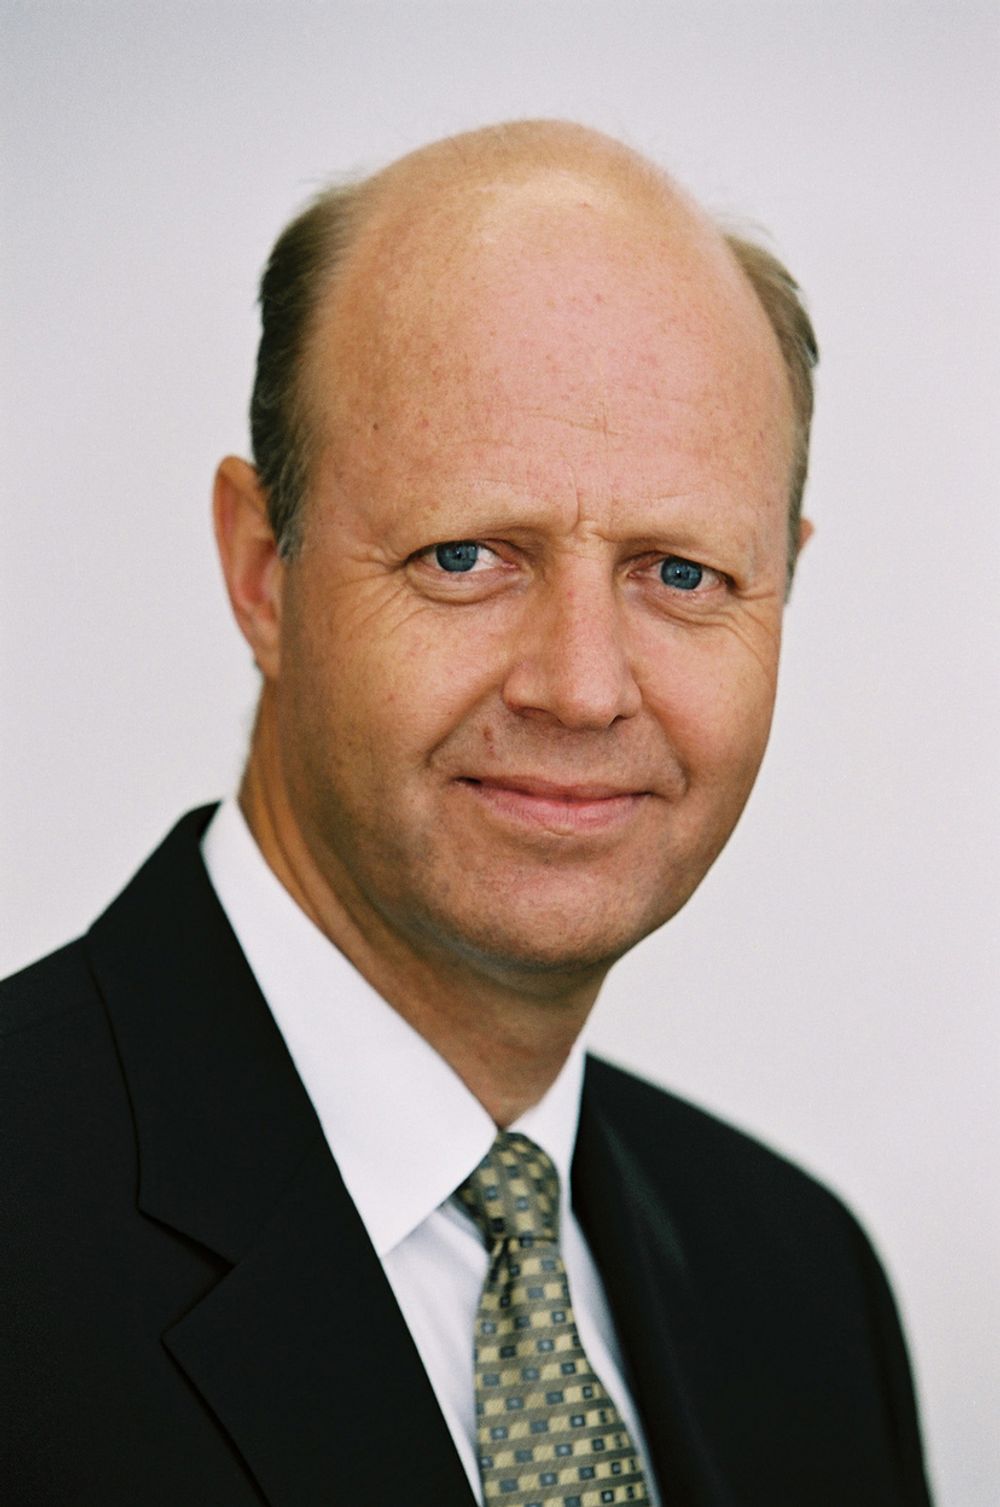 NY YARASJEF: Jørgen Ole Haslestad overtar som konsernsjef i Yara. Han er i dag divisjonsleder i Siemens.